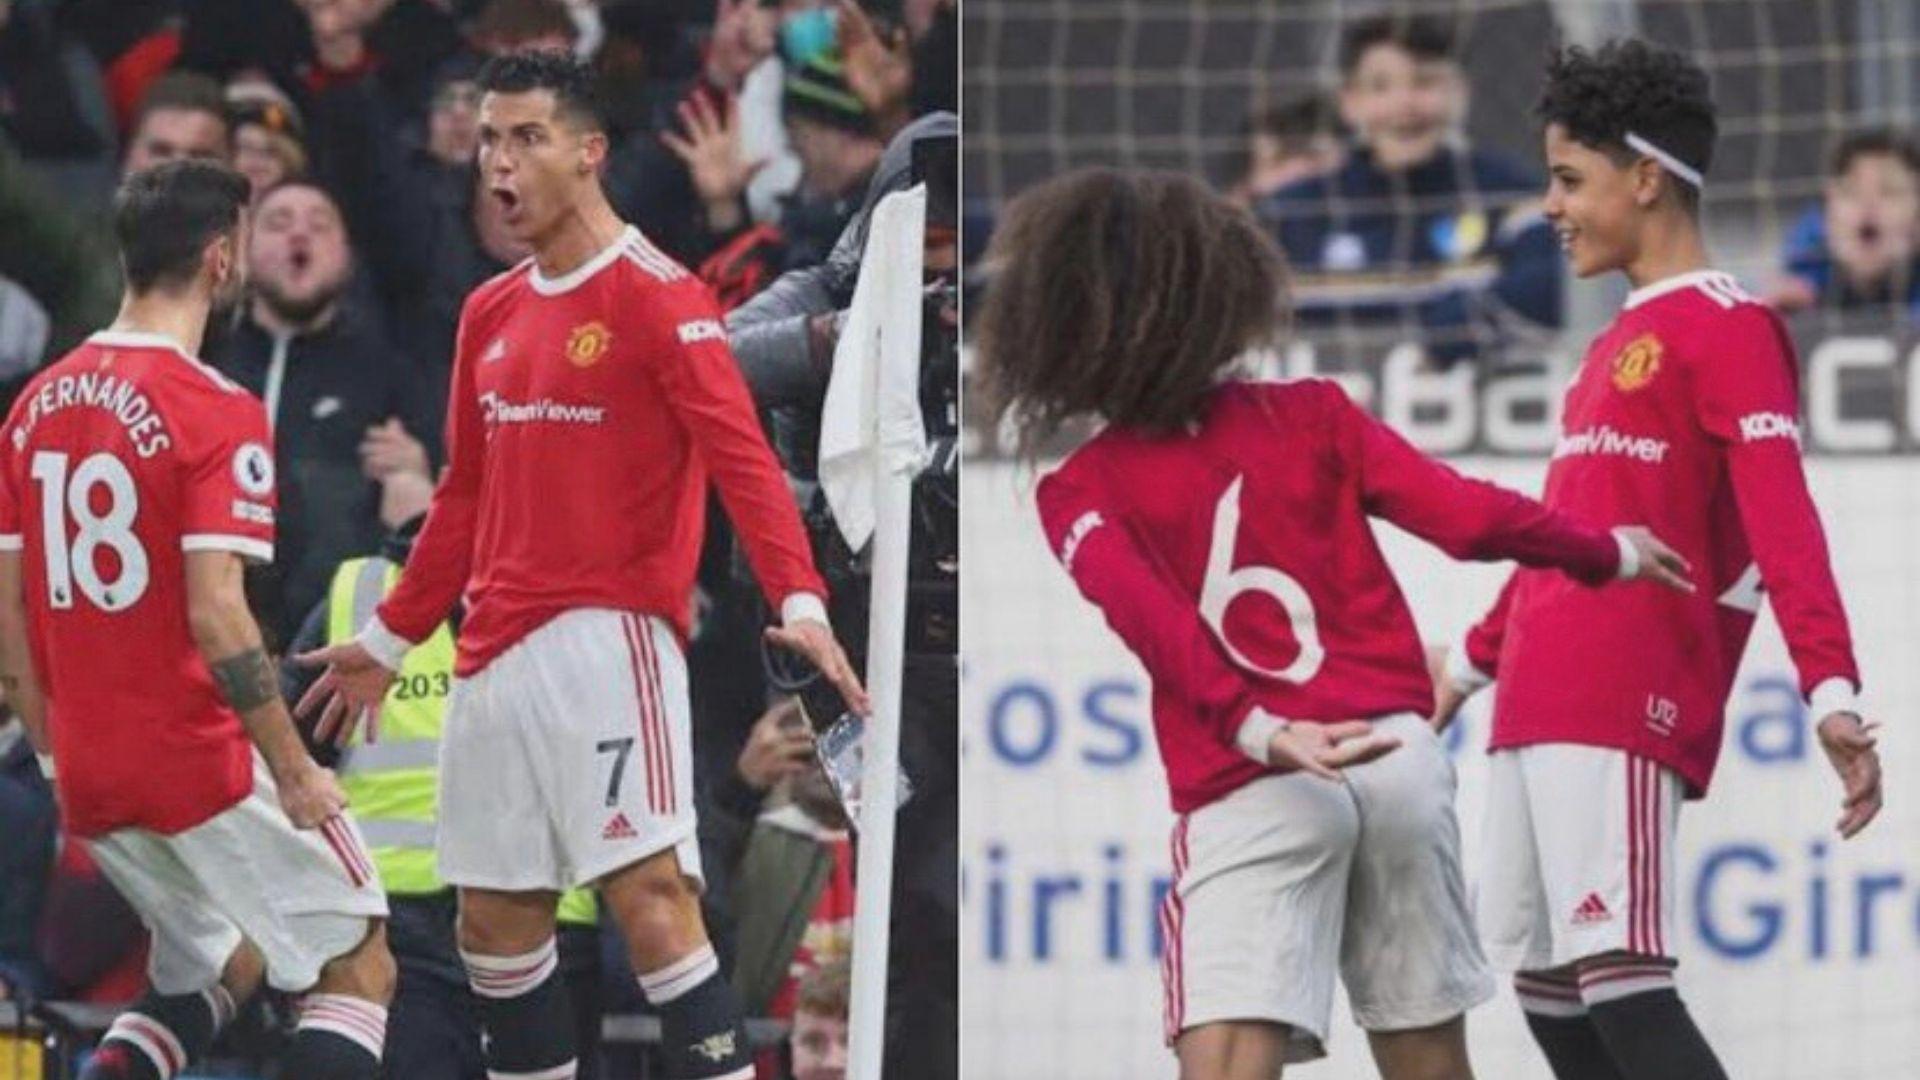 CRJunior Jaringan Mantap Ronaldo Jr Dan Aksi Siuu Seperti Ayahnya